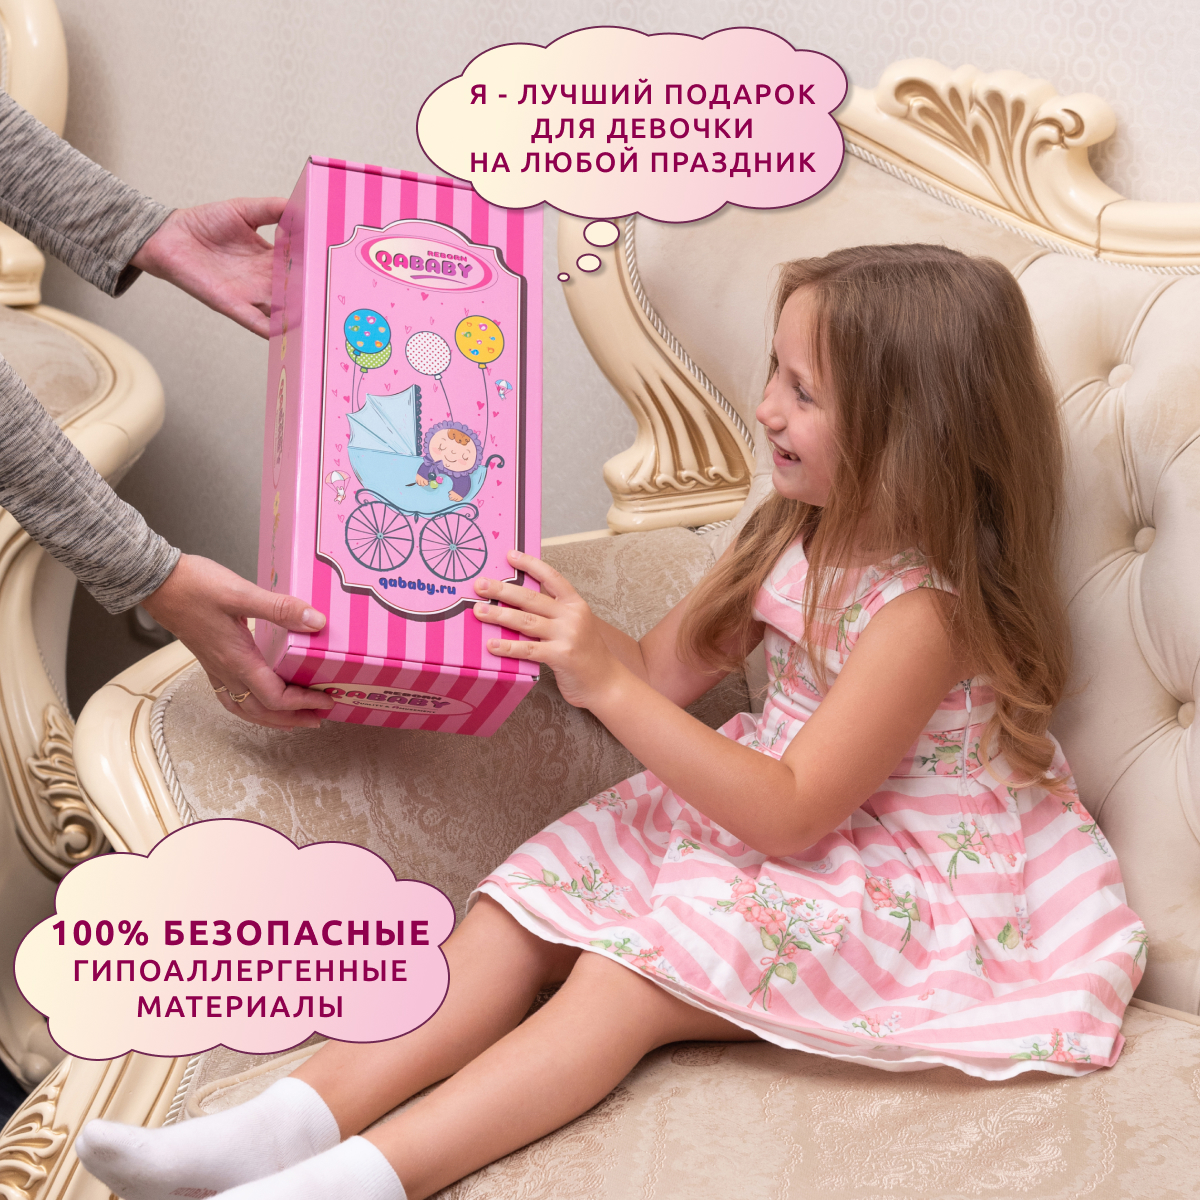 Кукла Реборн QA BABY Натали девочка интерактивная Пупс набор игрушки для ванной для девочки 38 см 3809 - фото 11